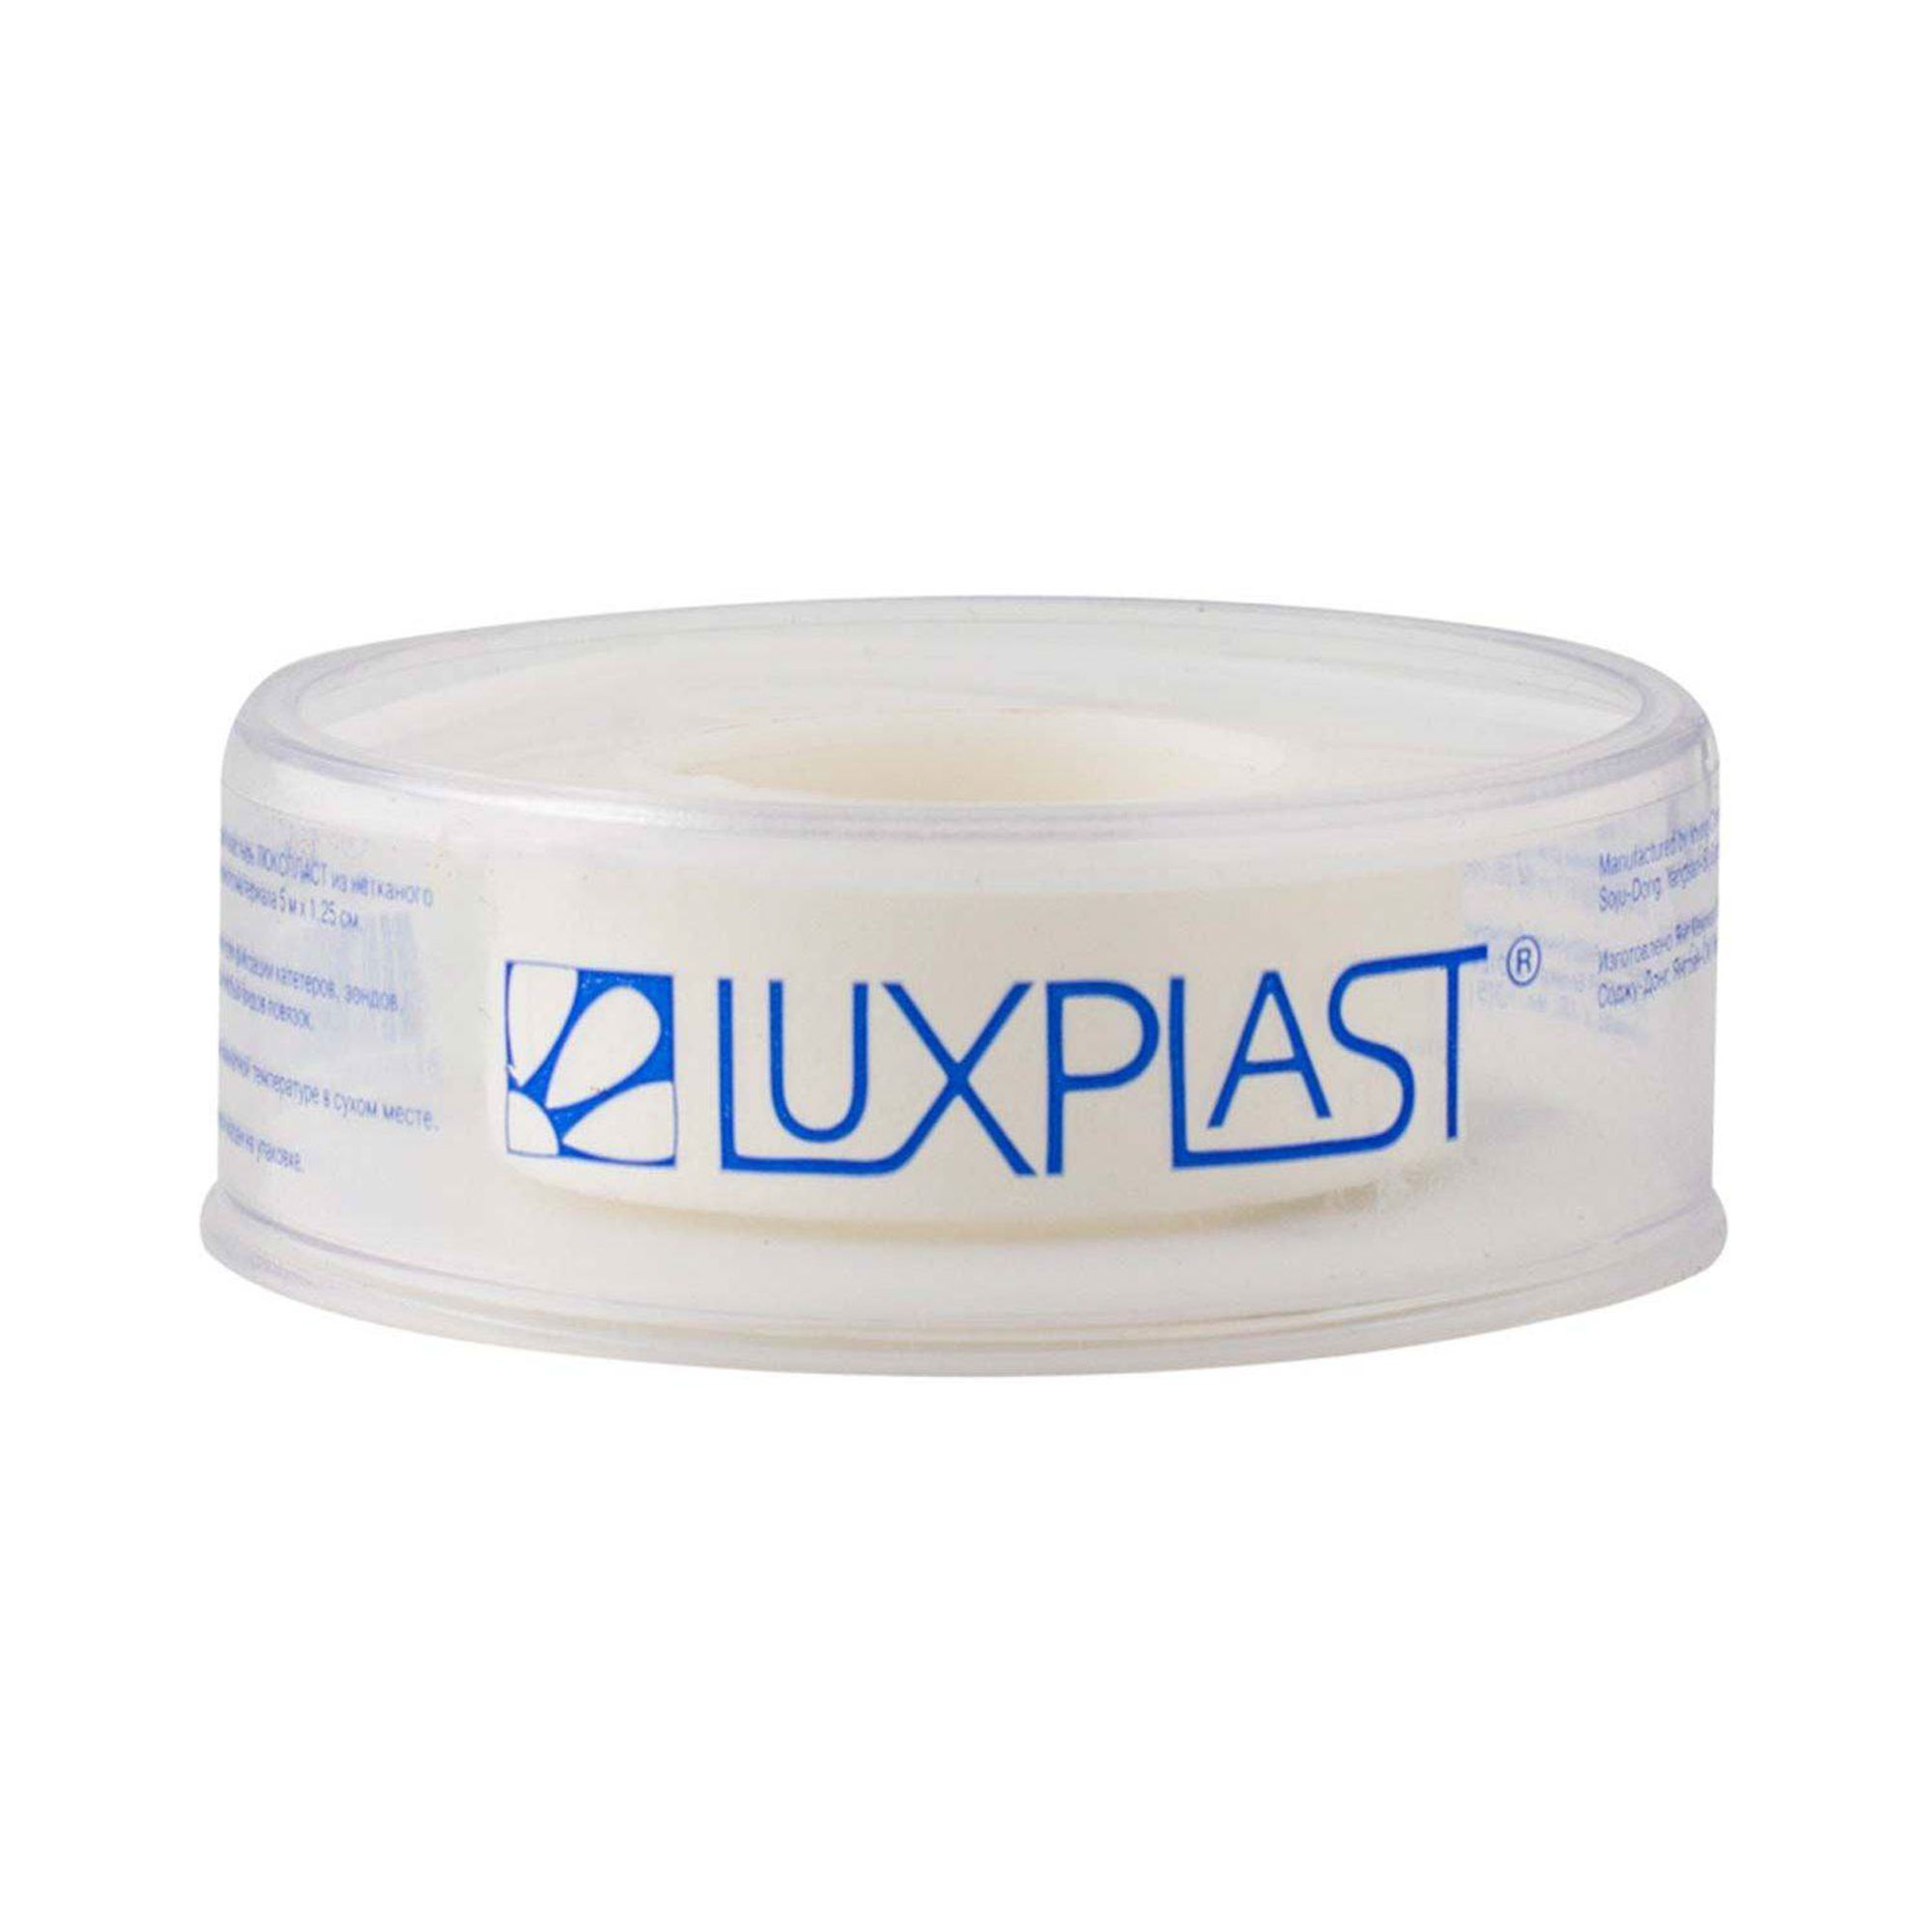 Пластырь фиксирующий Luxplast 1,25 см x 5 м, цвет белый